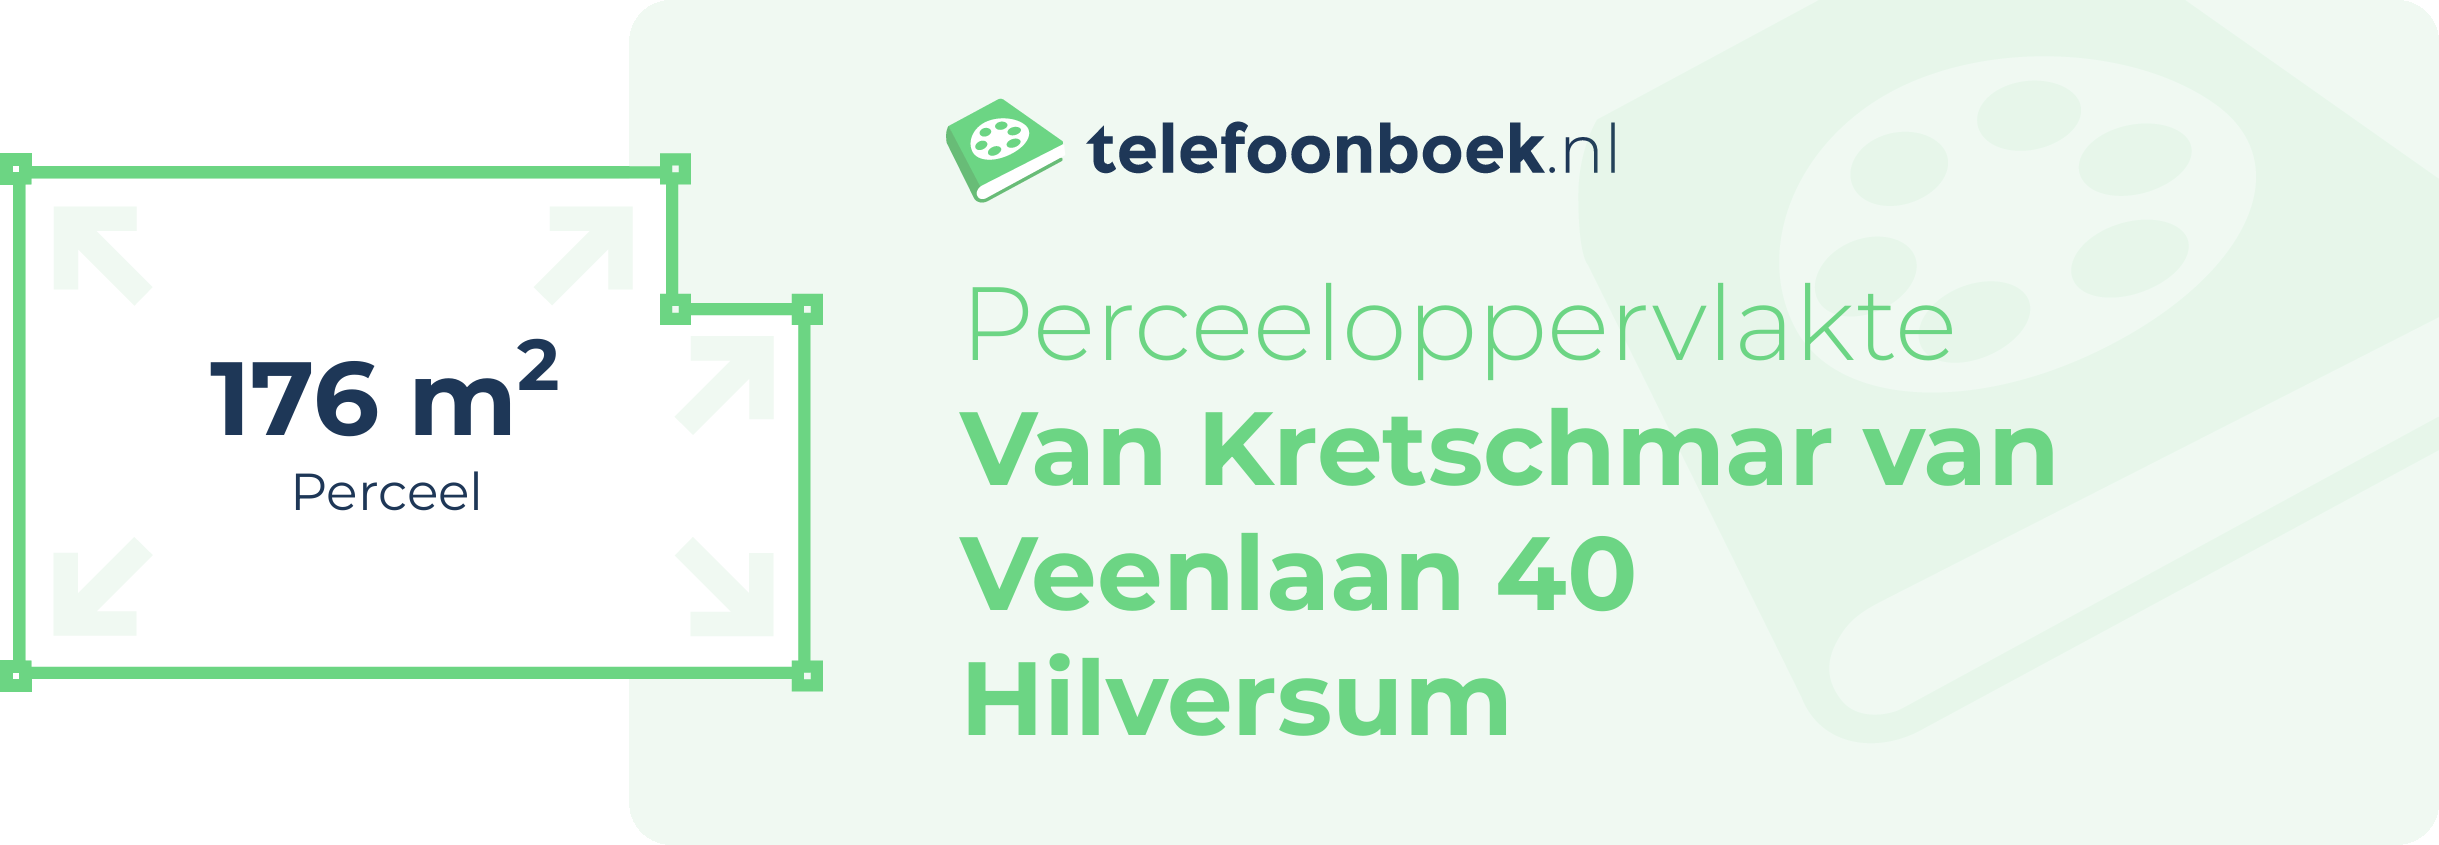 Perceeloppervlakte Van Kretschmar Van Veenlaan 40 Hilversum